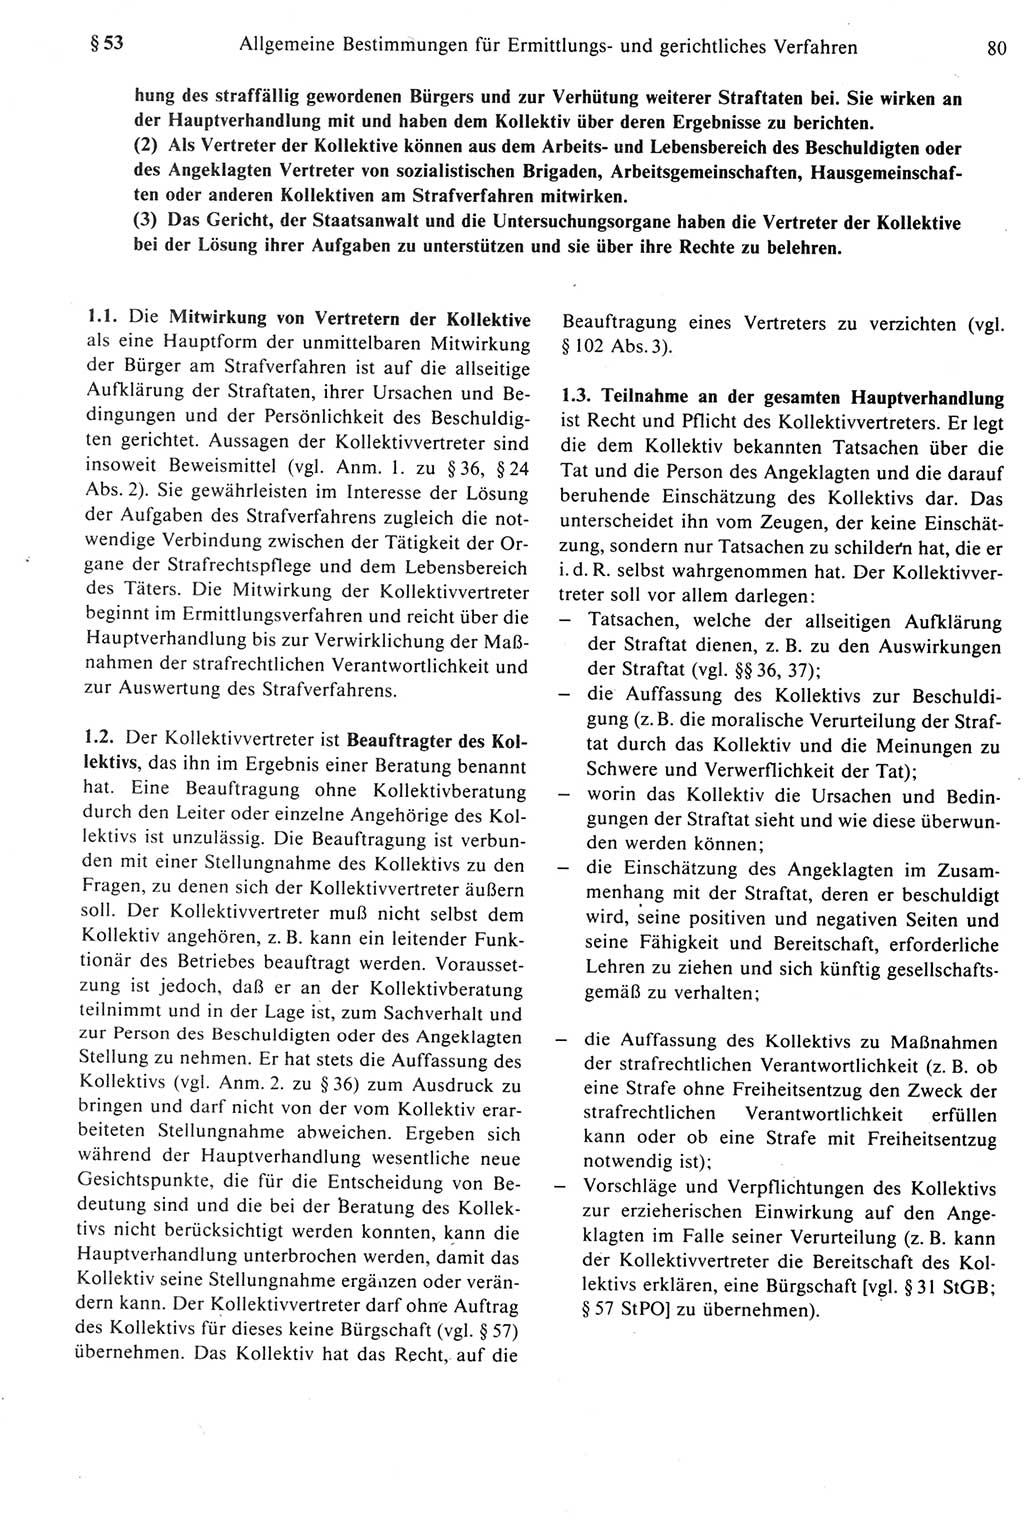 Strafprozeßrecht der DDR [Deutsche Demokratische Republik], Kommentar zur Strafprozeßordnung (StPO) 1987, Seite 80 (Strafprozeßr. DDR Komm. StPO 1987, S. 80)